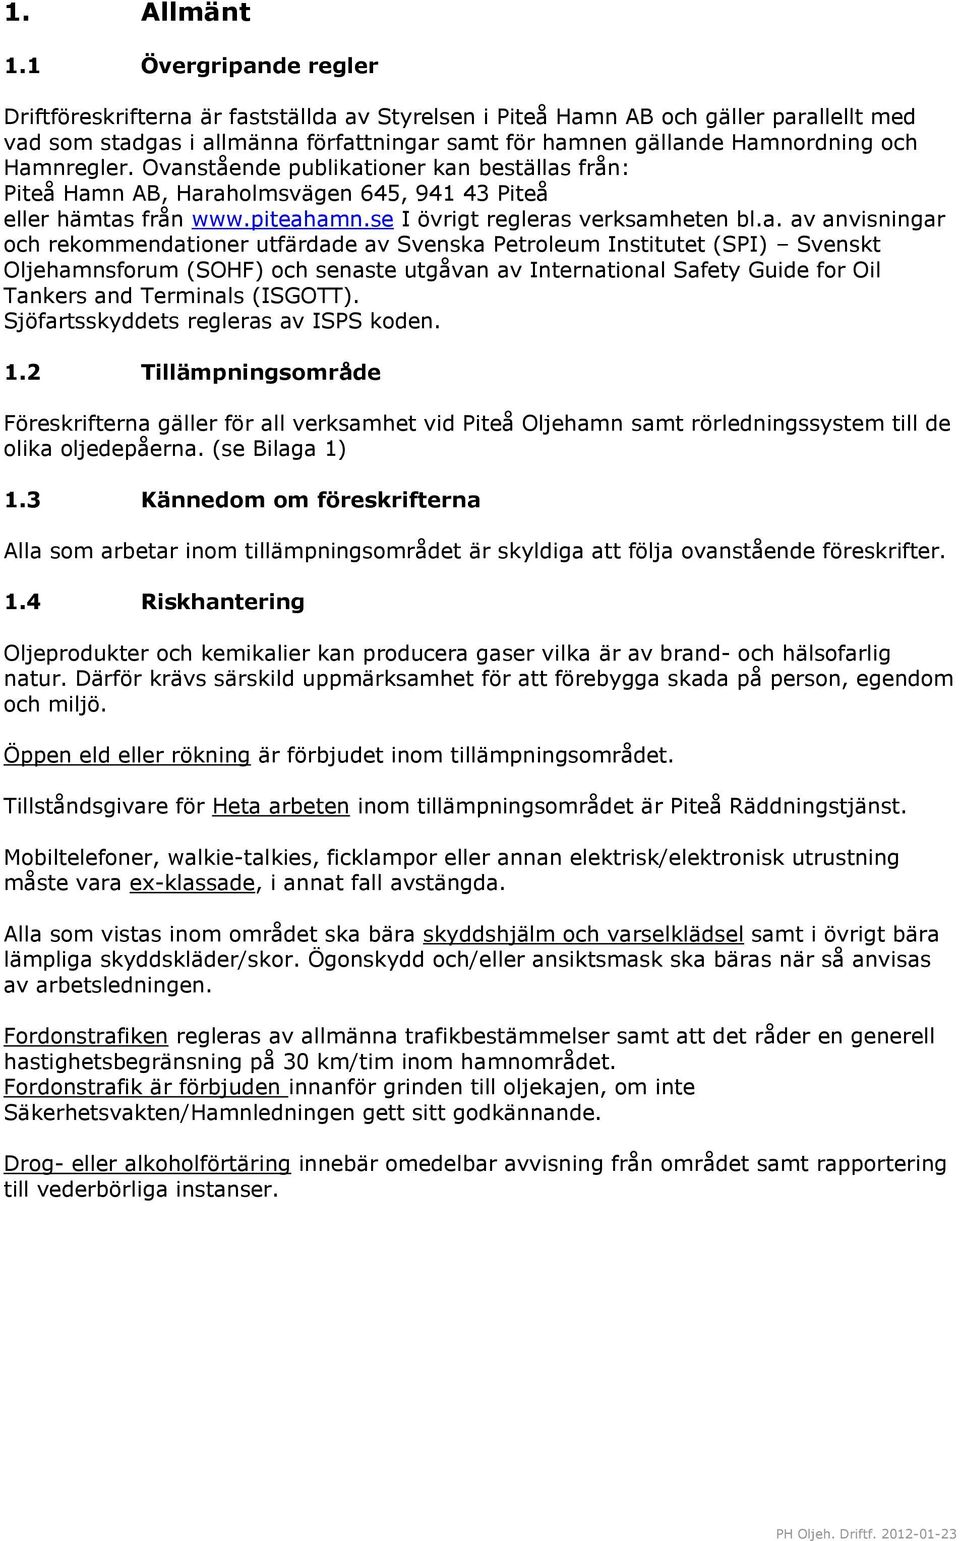 Hamnregler. Ovanstående publikationer kan beställas från: Piteå Hamn AB, Haraholmsvägen 645, 941 43 Piteå eller hämtas från www.piteahamn.se I övrigt regleras verksamheten bl.a. av anvisningar och